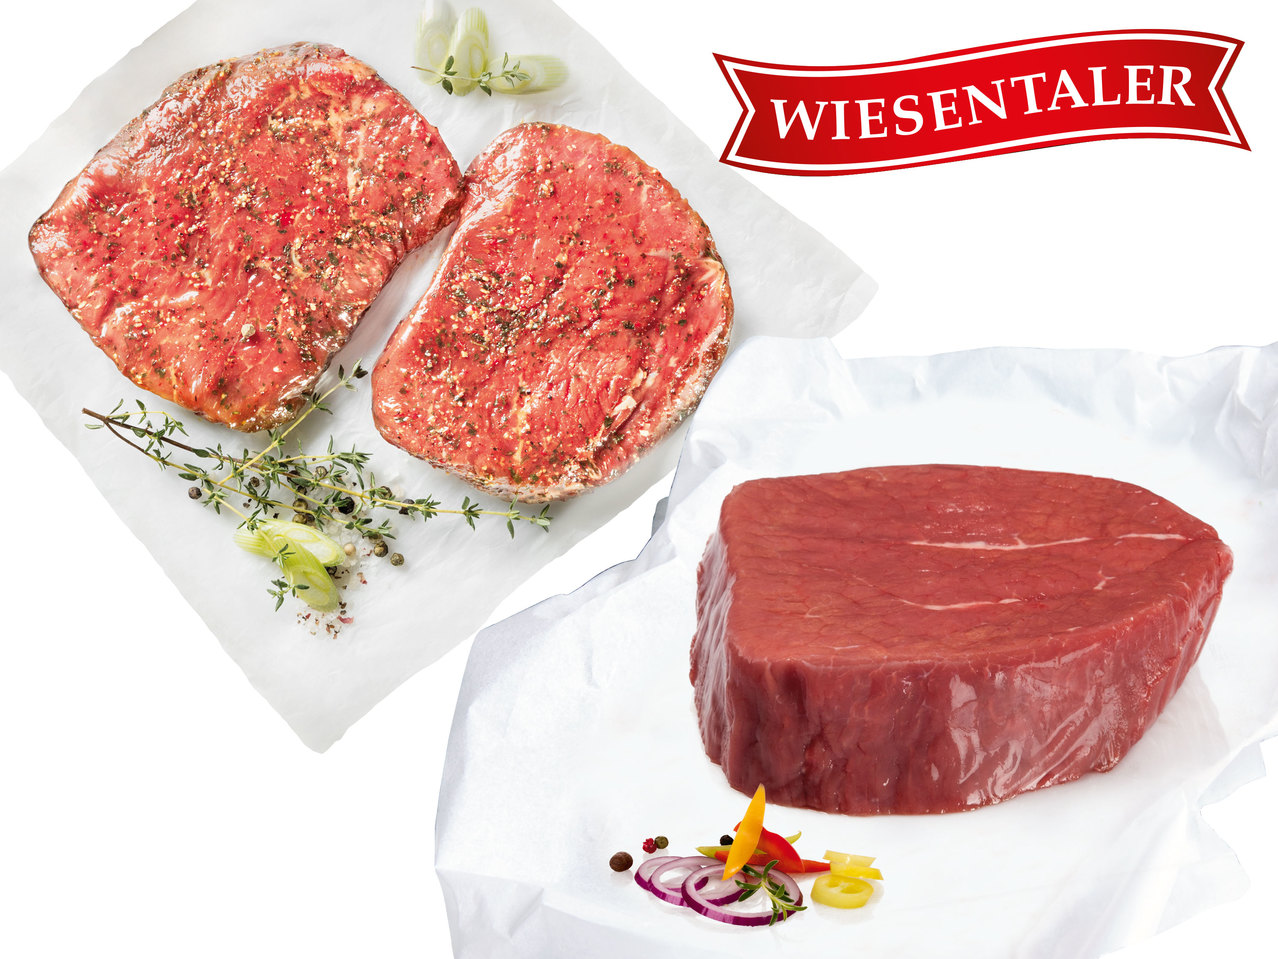 WIESENTALER Frisches österreichisches Eye-of-round-Steak oder Hüftsteak mariniert